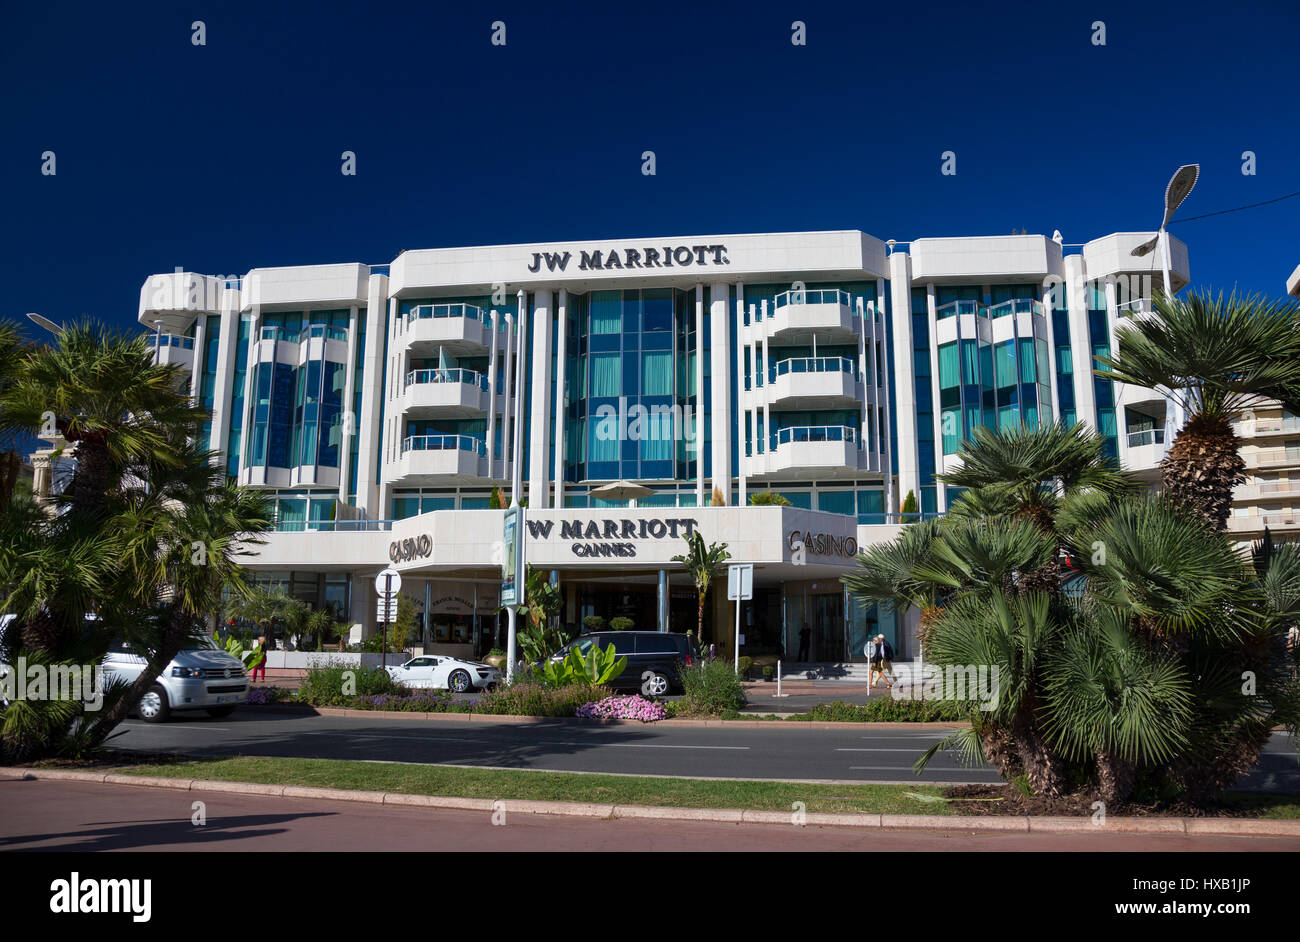 El JW Marriott Hotel & Casino de Cannes, Francia Foto de stock